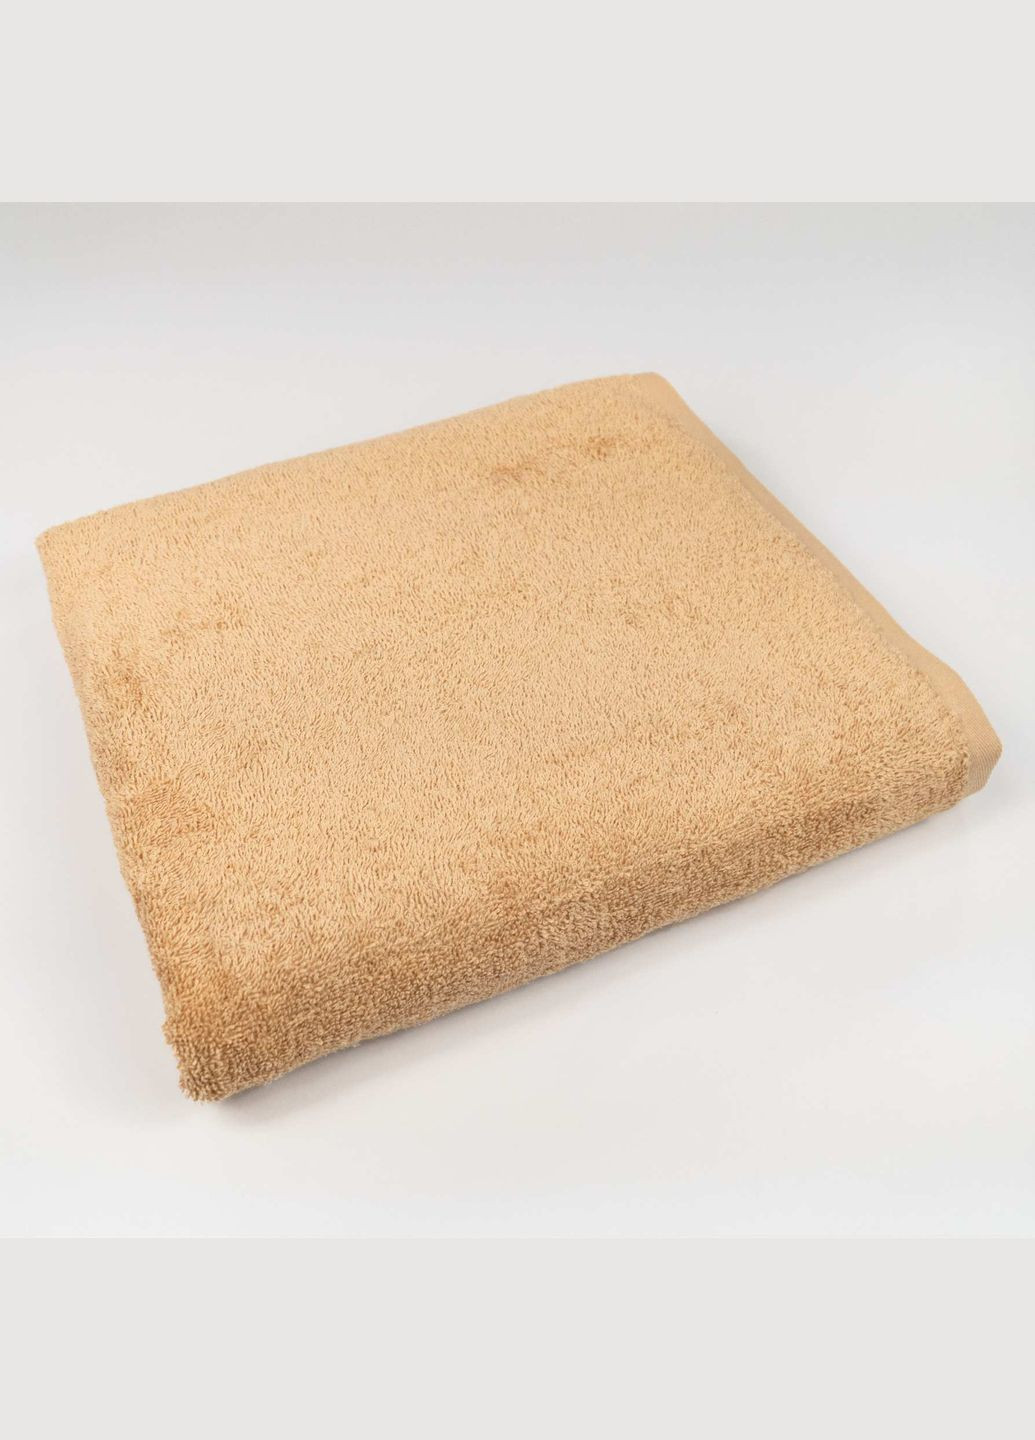 GM Textile набор махровых полотенец 3шт 40х70см, 50х90см, 70х140см 400г/м2 (горчичный) комбинированный производство -